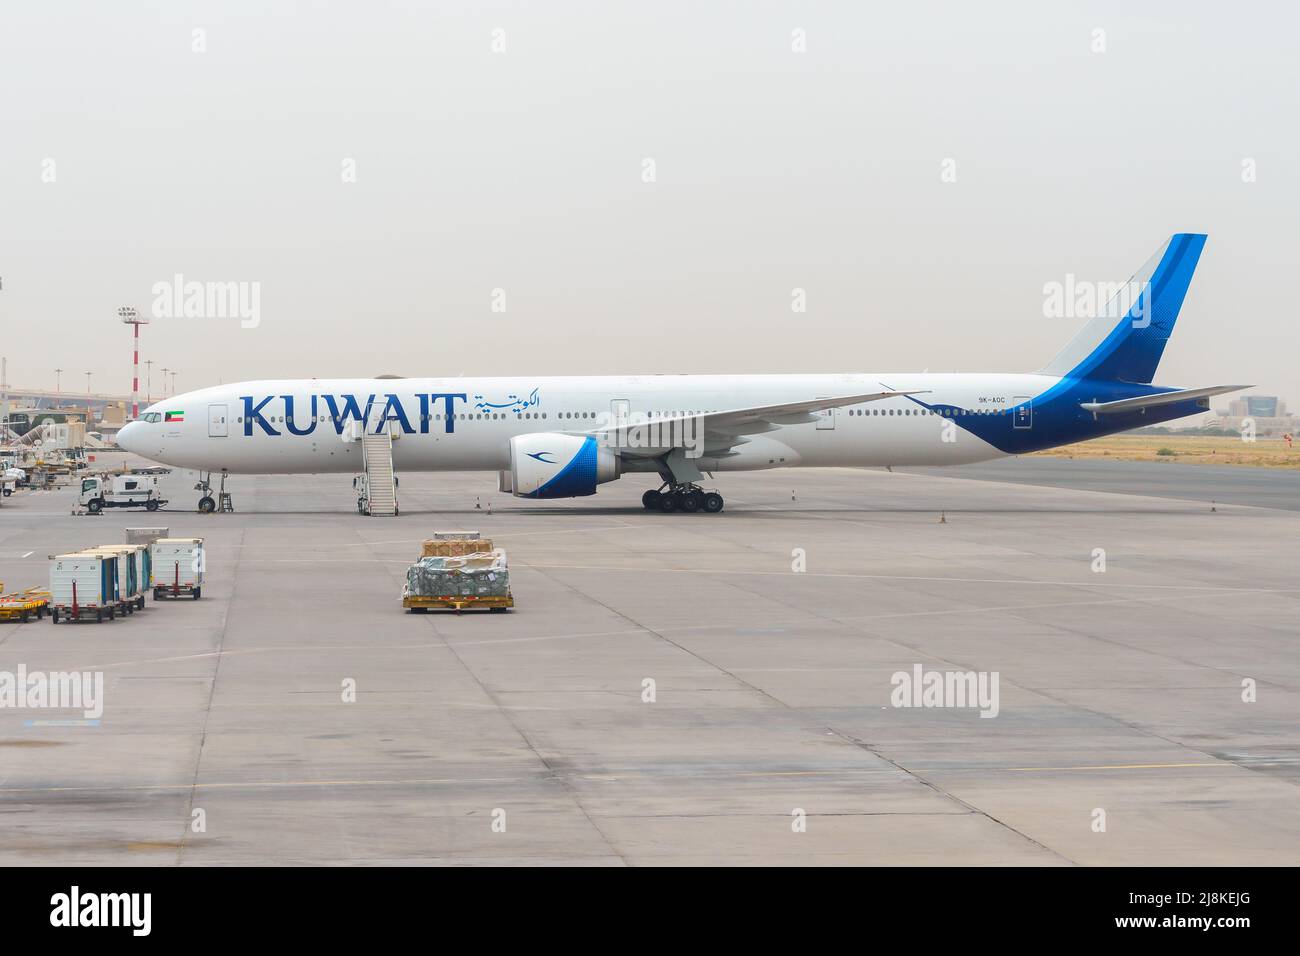 Kuwait Airways Boeing 777-300ER aircraft at Kuwait Airport. Airplane of Kuwait Airline Boeing plane. Stock Photo